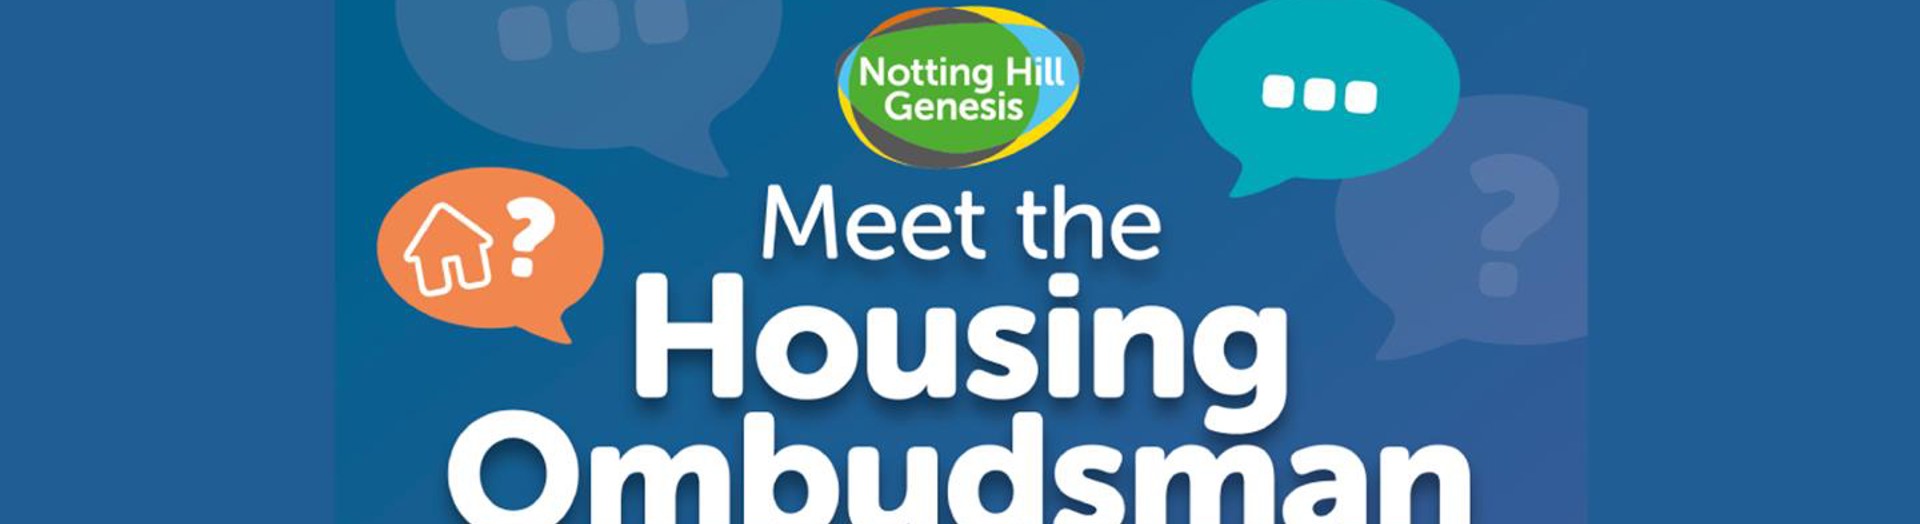 Meet The Housing Ombudsman Banner